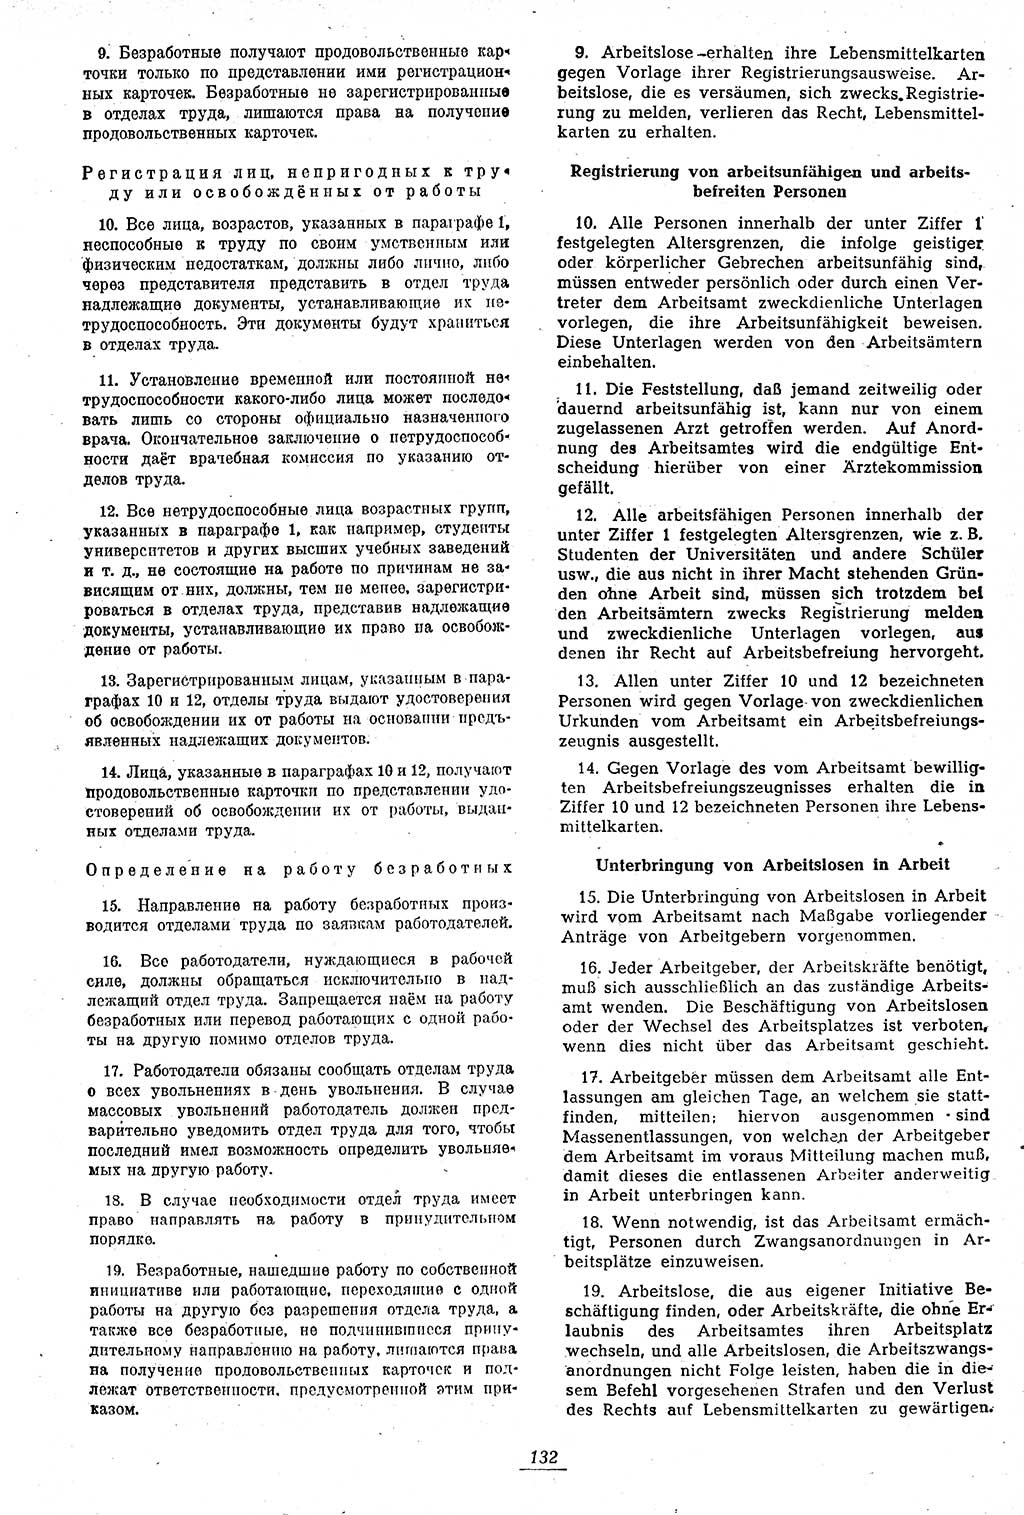 Amtsblatt des Kontrollrats (ABlKR) in Deutschland 1946, Seite 132/2 (ABlKR Dtl. 1946, S. 132/2)